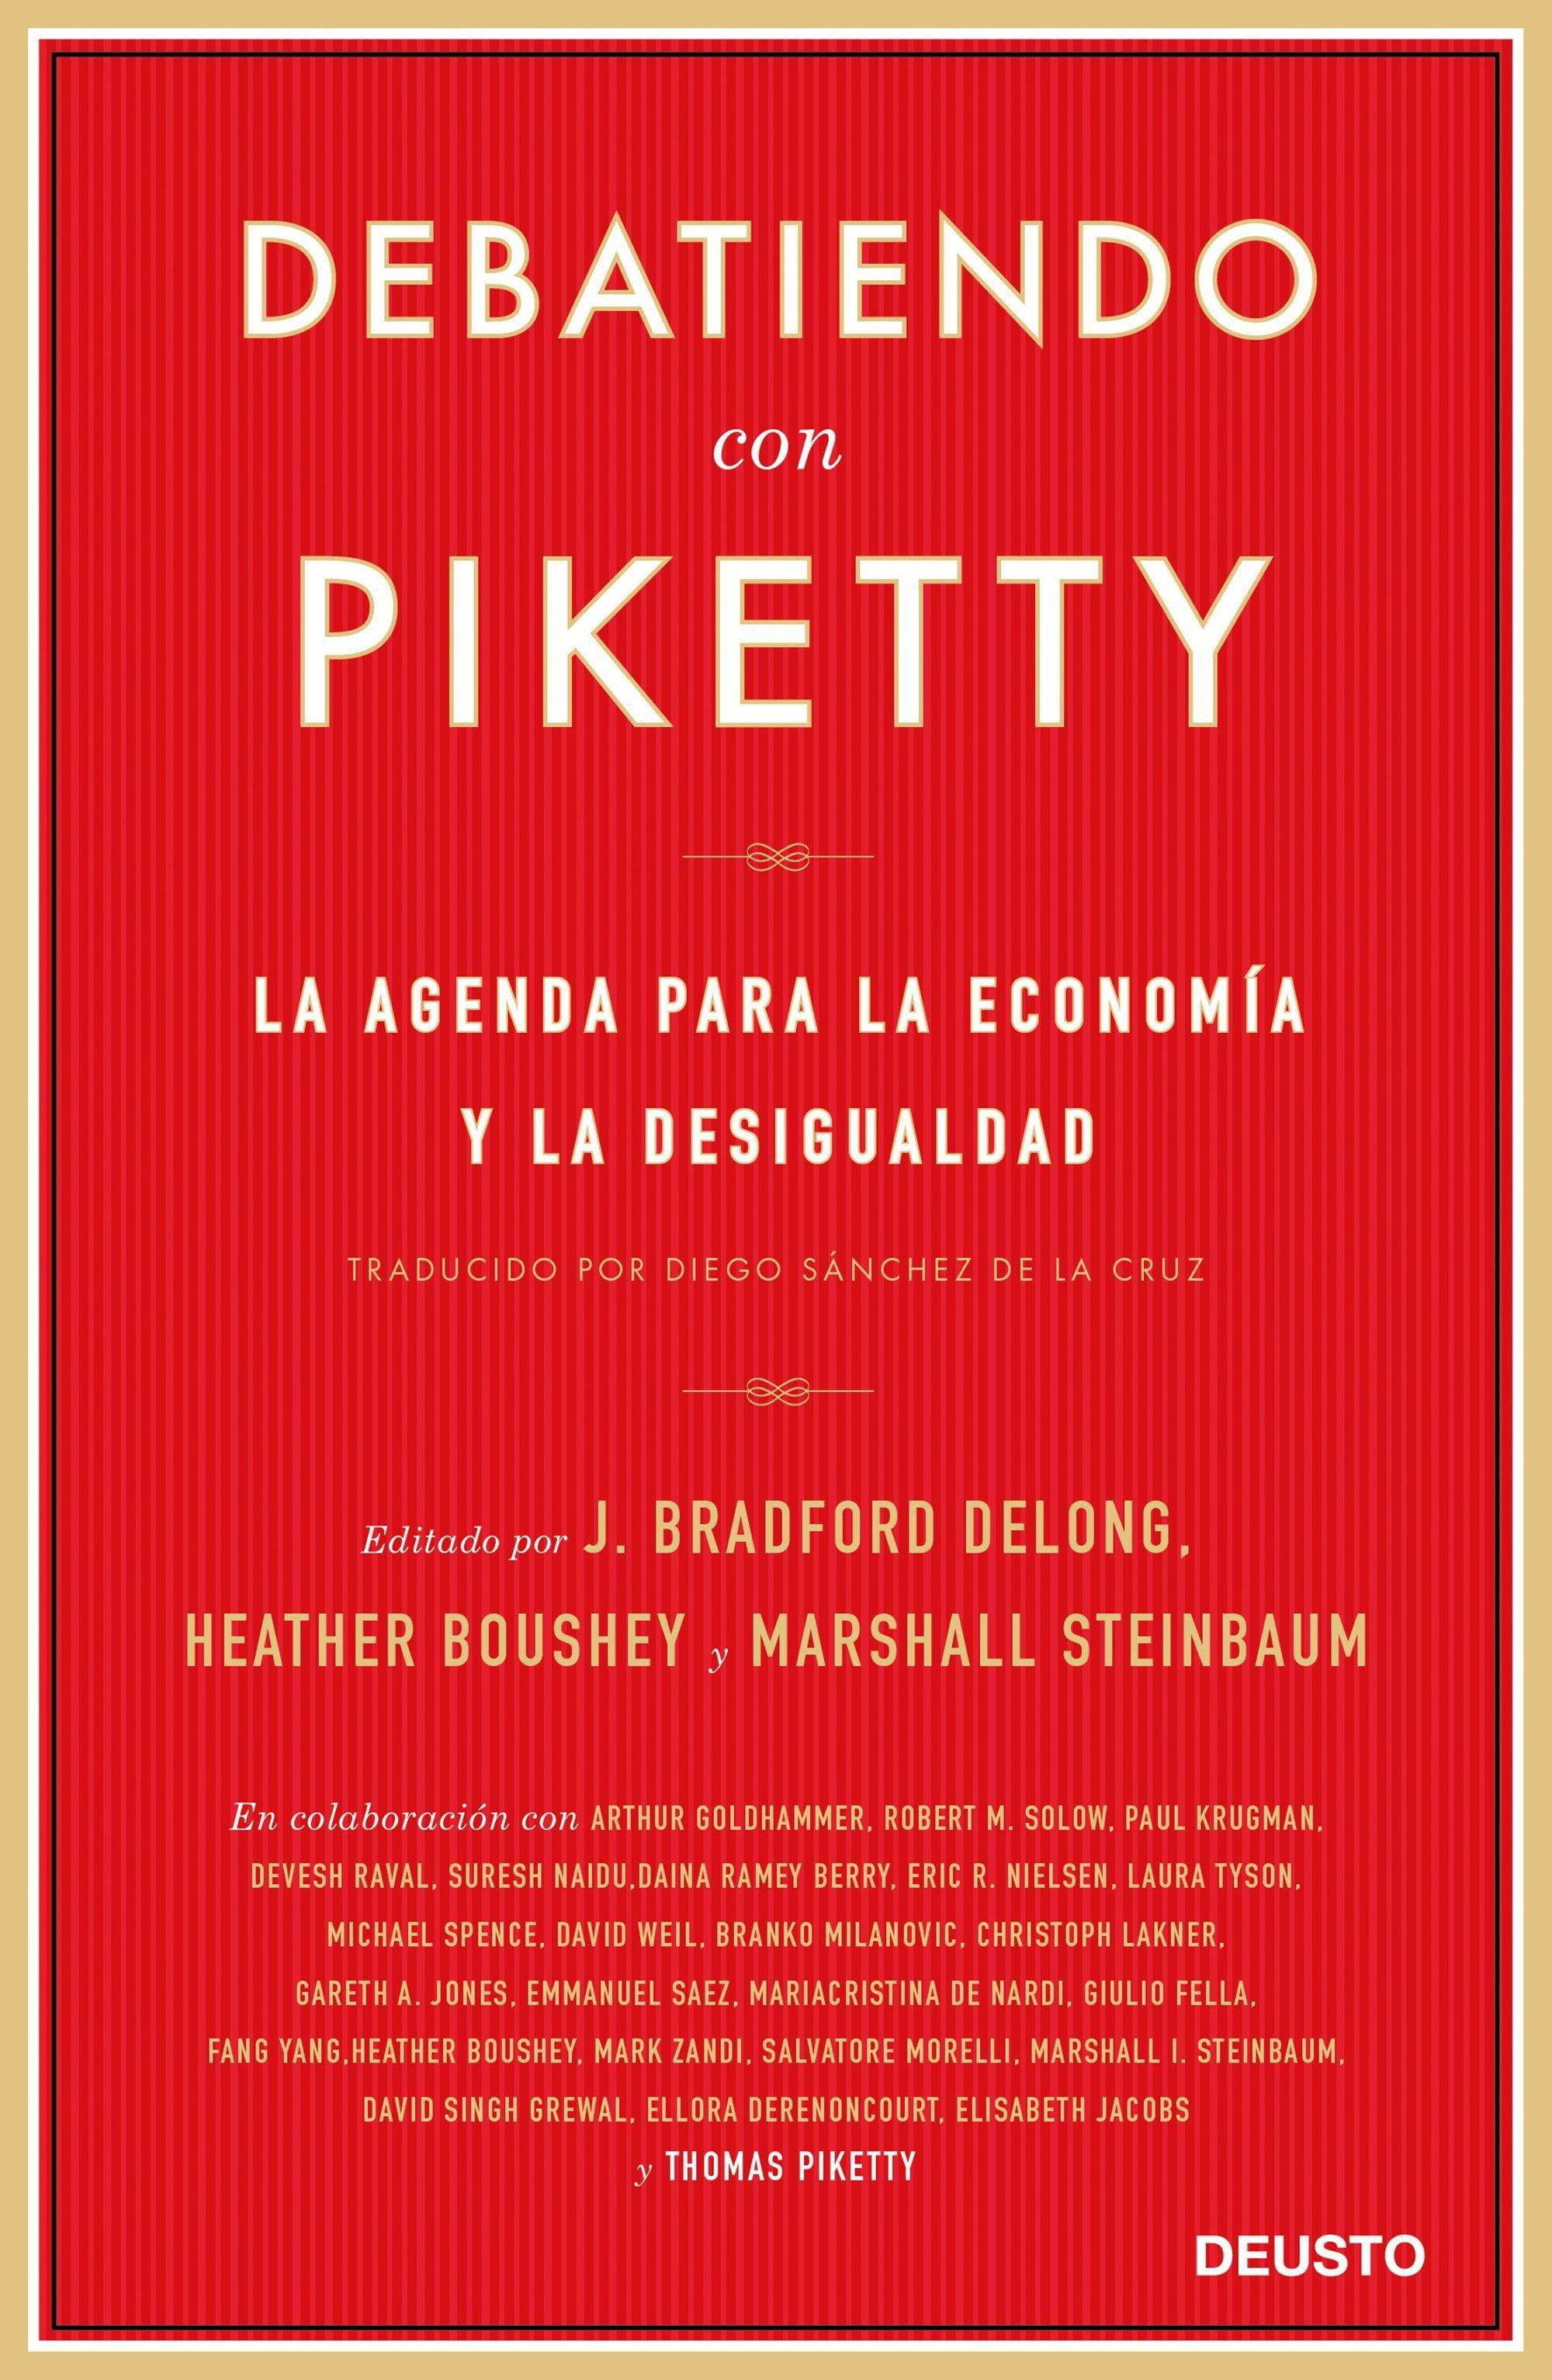 DEBATIENDO CON PIKETTY "LA AGENDA PARA LA ECONOMÍA Y LA DESIGUALDAD". 